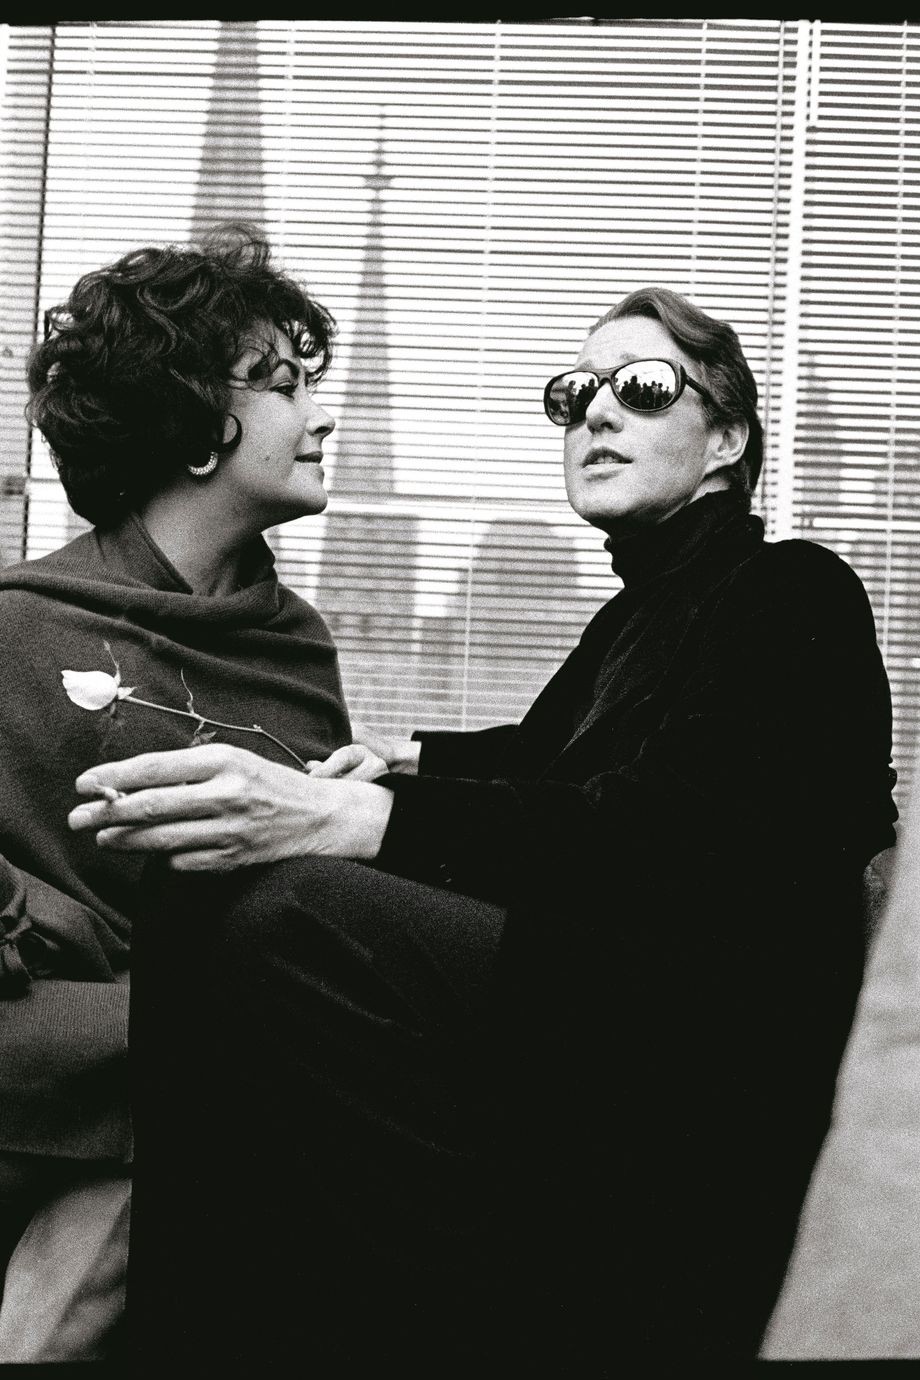 Элизабет Тейлор и Холстон на показе дизайнера, 1978. Фотограф Билл Каннингем